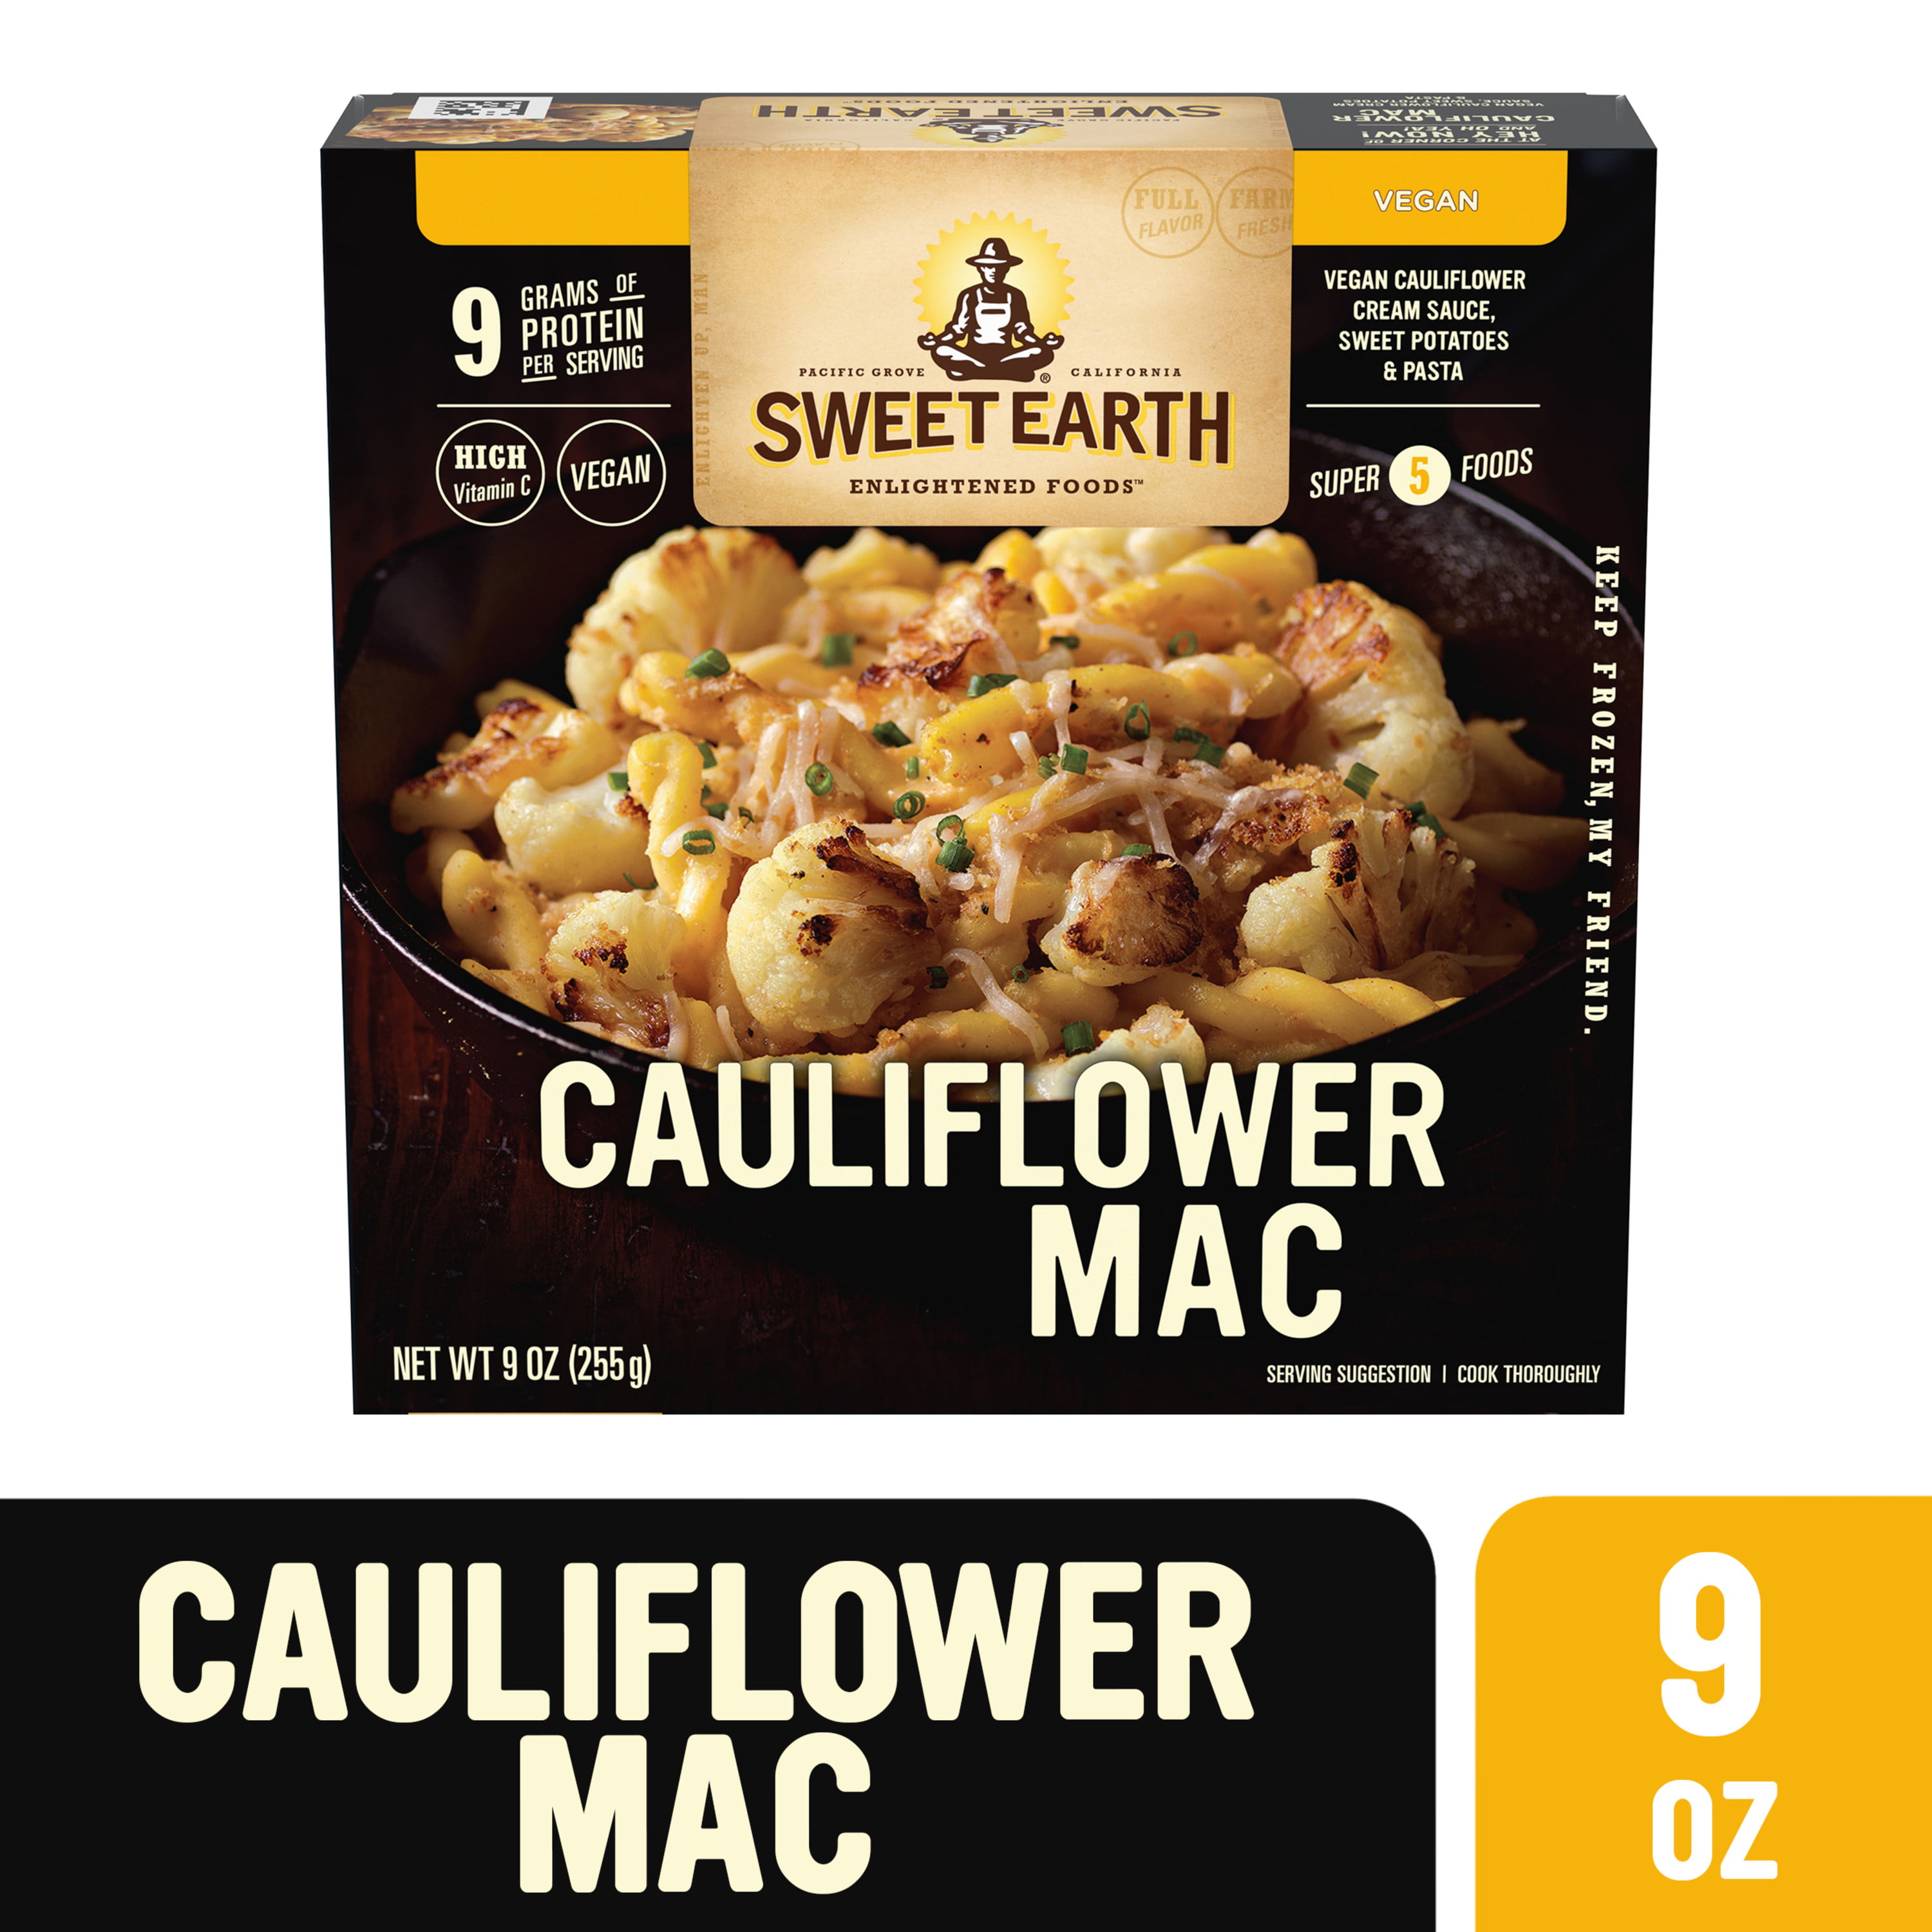 Sweet Earth Cauliflower Mac Ingredients - 101 Simple Recipe